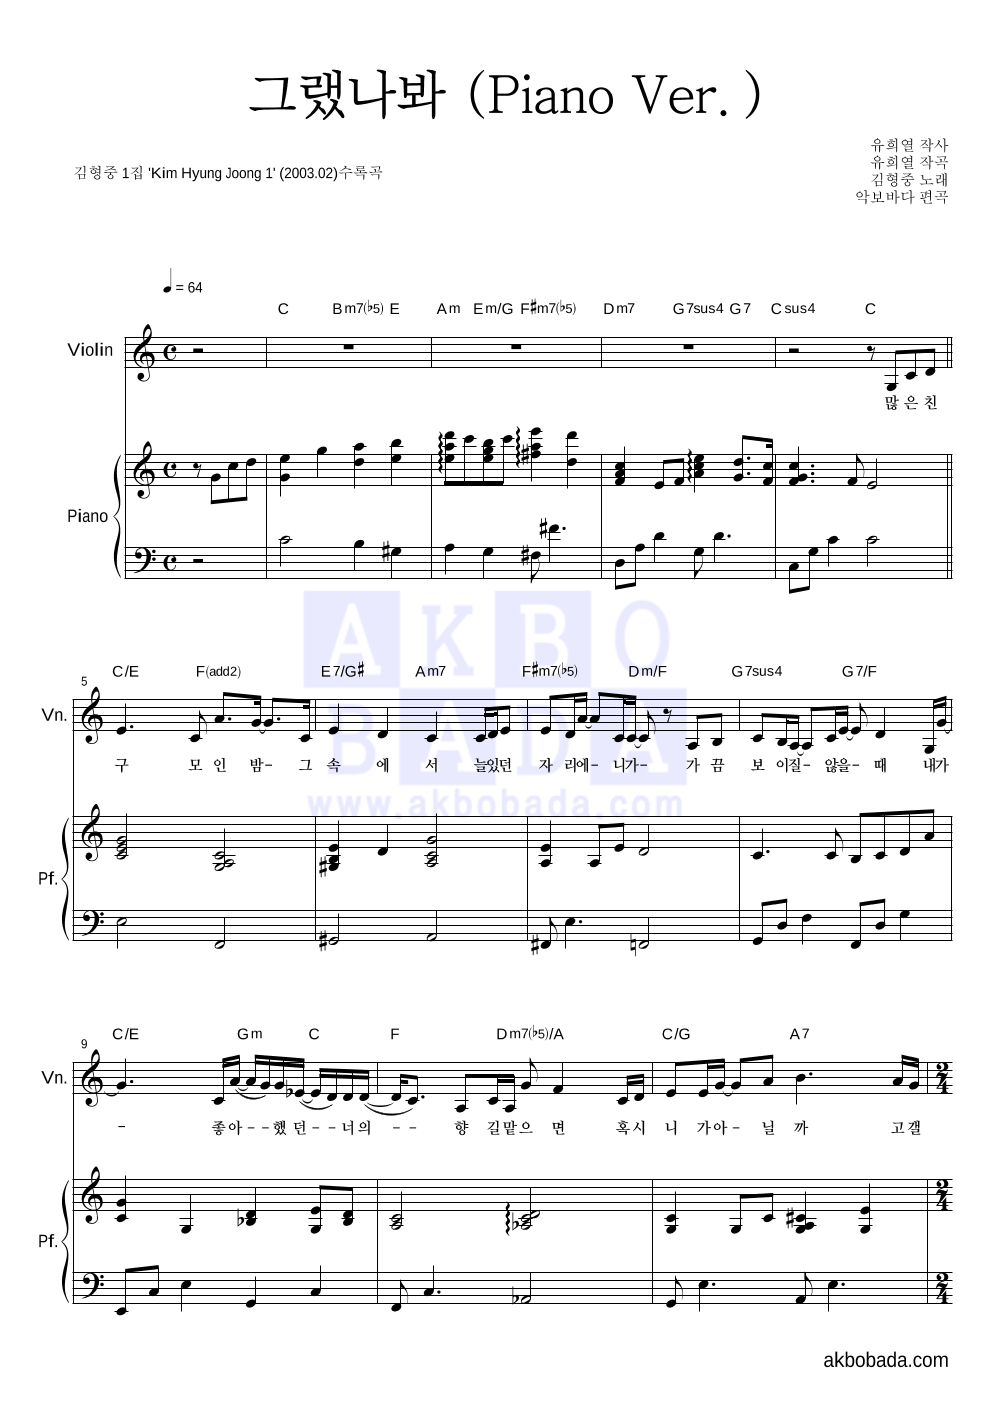 김형중 - 그랬나봐 (Piano Ver.) 바이올린&피아노 악보 